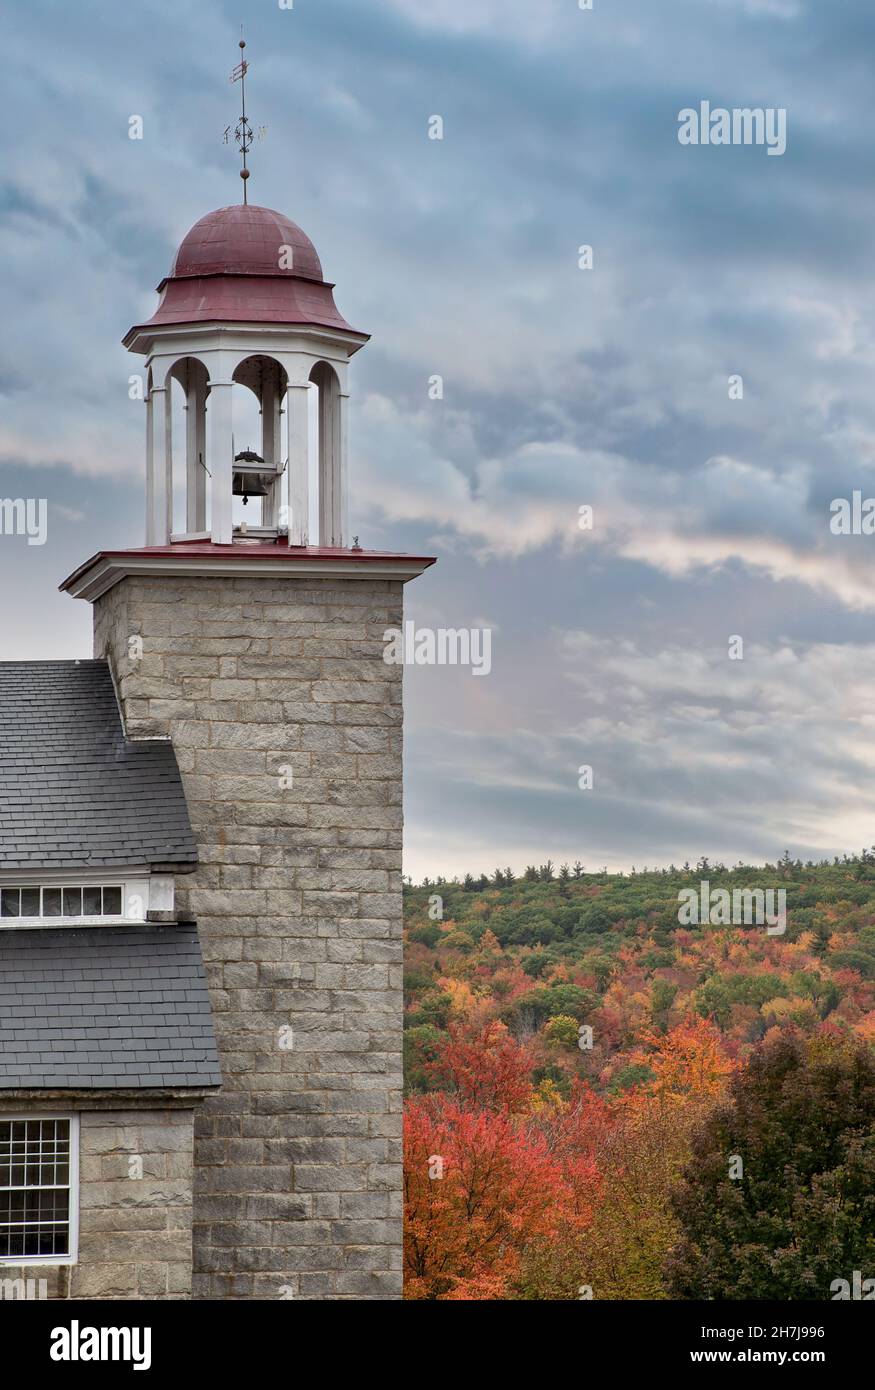 Cielo de otoño colorido, brillante follaje de otoño, y campanario de granito de conservado molino textil edificio construido en 1846 en Harrisville pueblo. Foto de stock